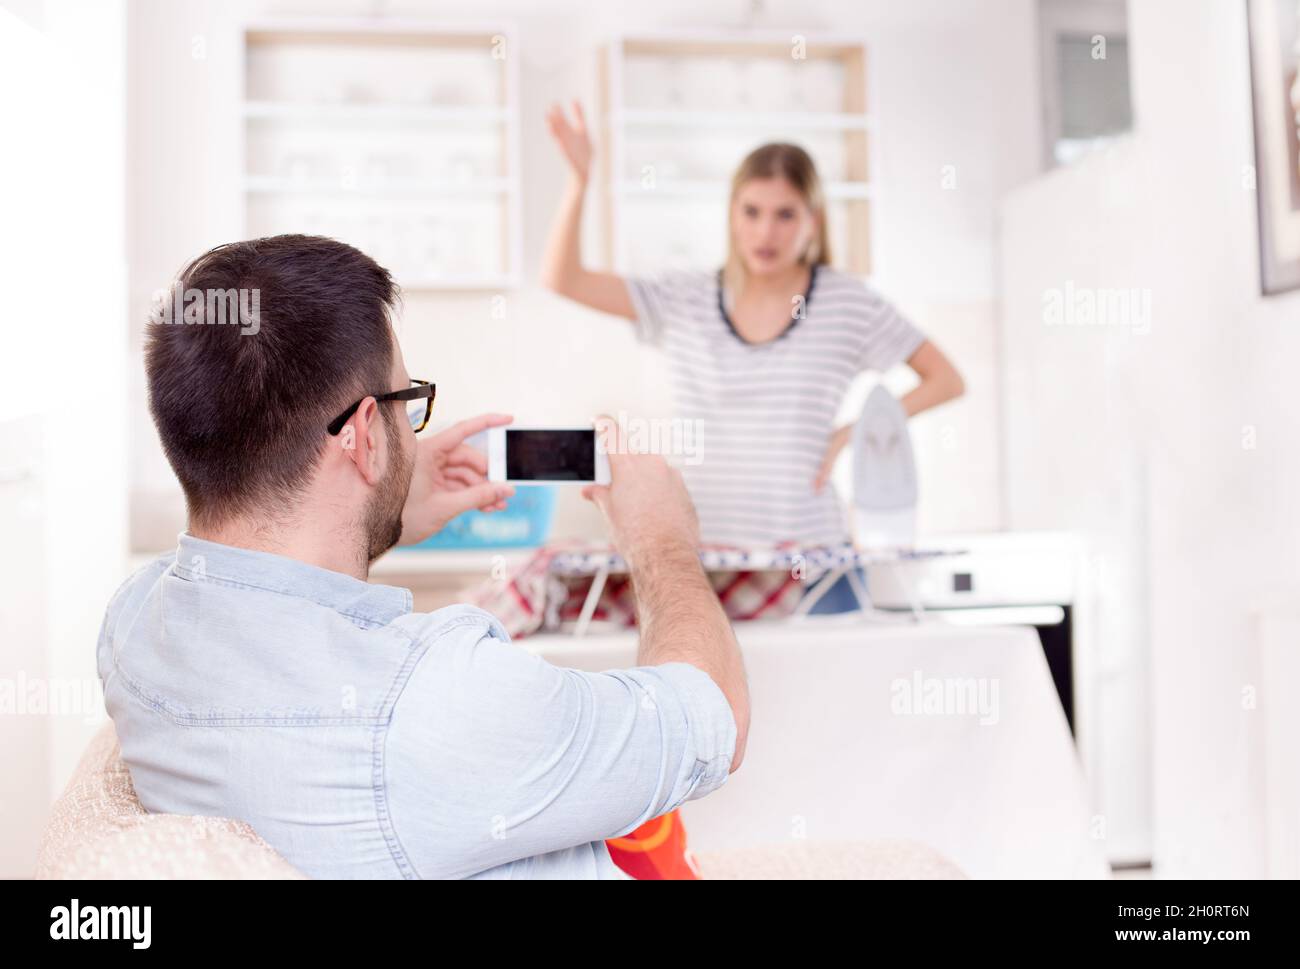 Hübscher junger Mann, der Spaß hat, seine zornige Freundin beim Bügeln und bei der Arbeit festzuhalten Stockfoto